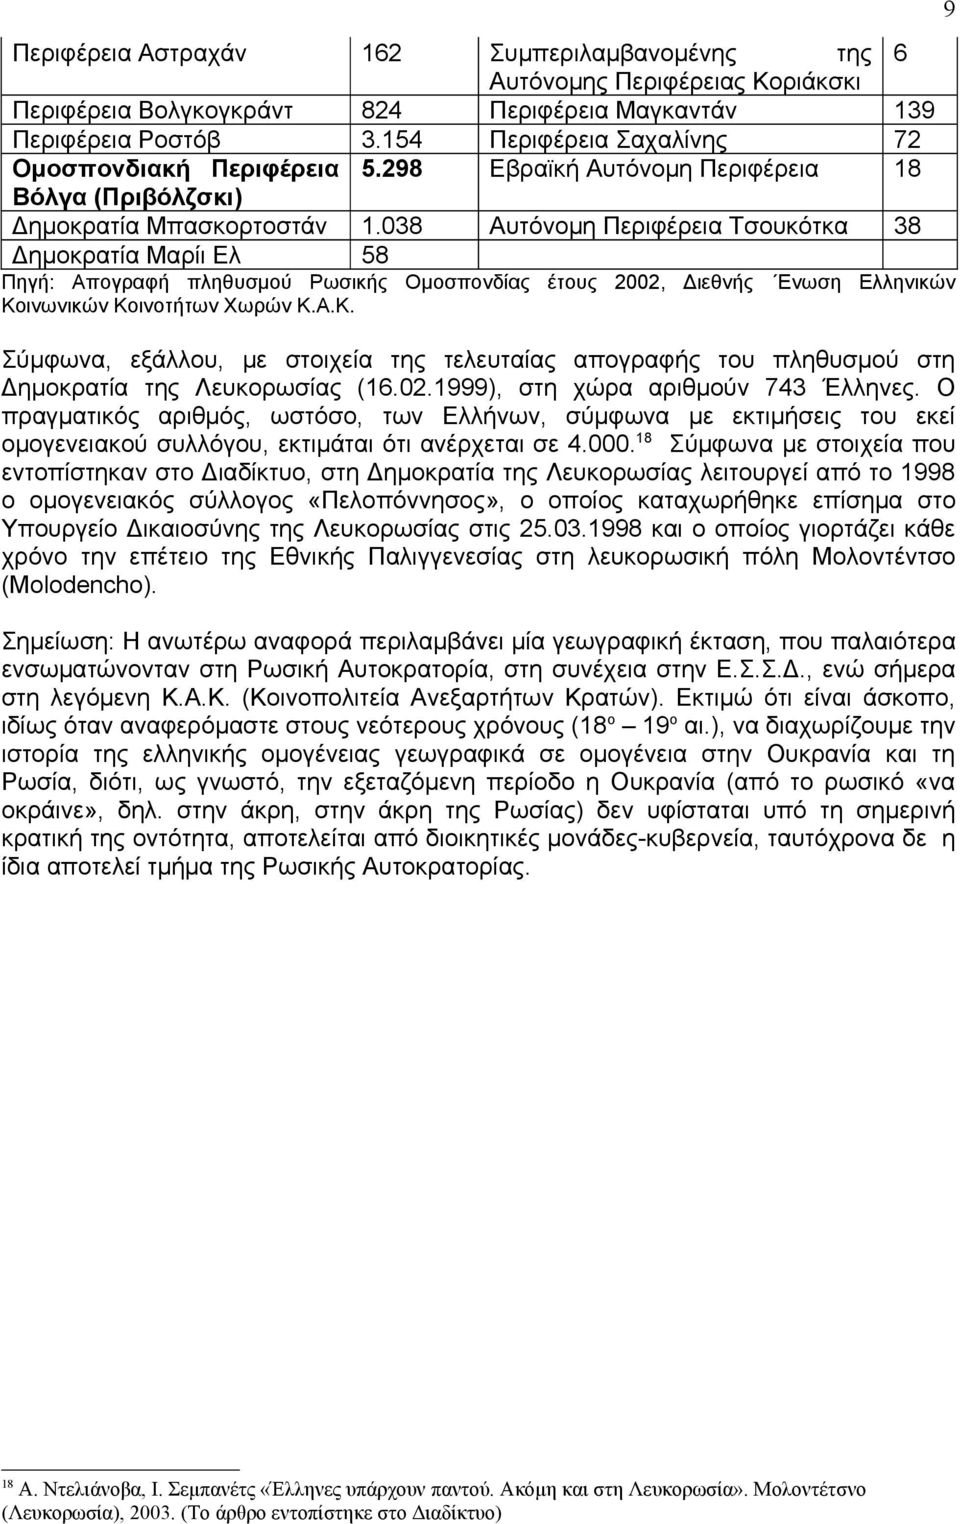 038 Αυτόνομη Περιφέρεια Τσουκότκα 38 Δημοκρατία Μαρίι Ελ 58 Πηγή: Απογραφή πληθυσμού Ρωσικής Ομοσπονδίας έτους 2002, Διεθνής Ενωση Ελληνικών Κο